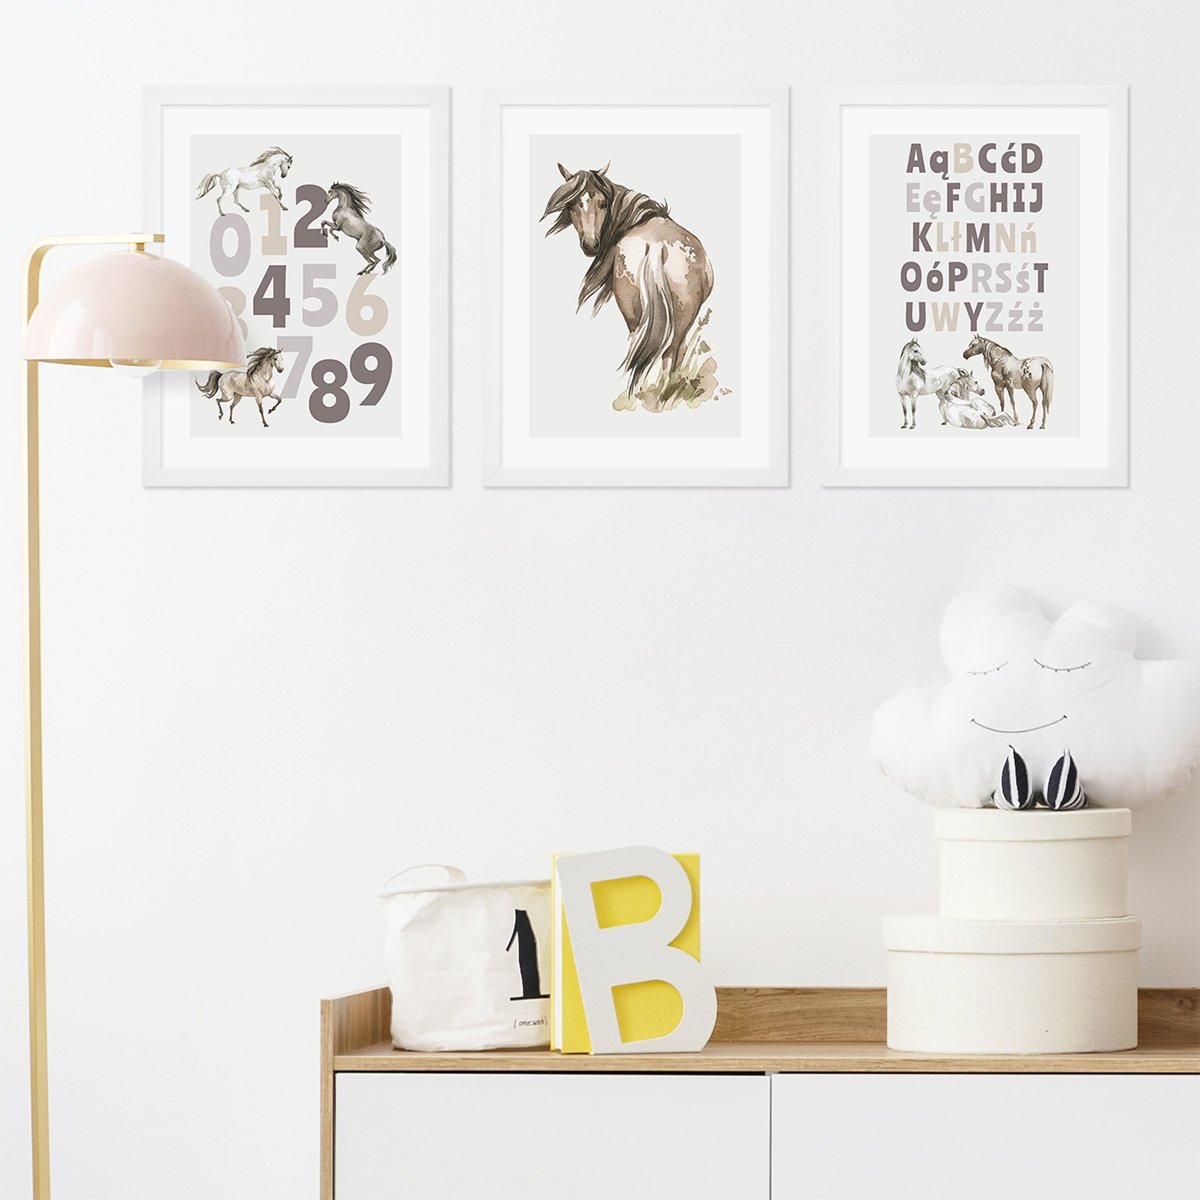 Edukacyjne plakaty do pokoju dziecka z alfabetem, cyframi i dzikimi końmi